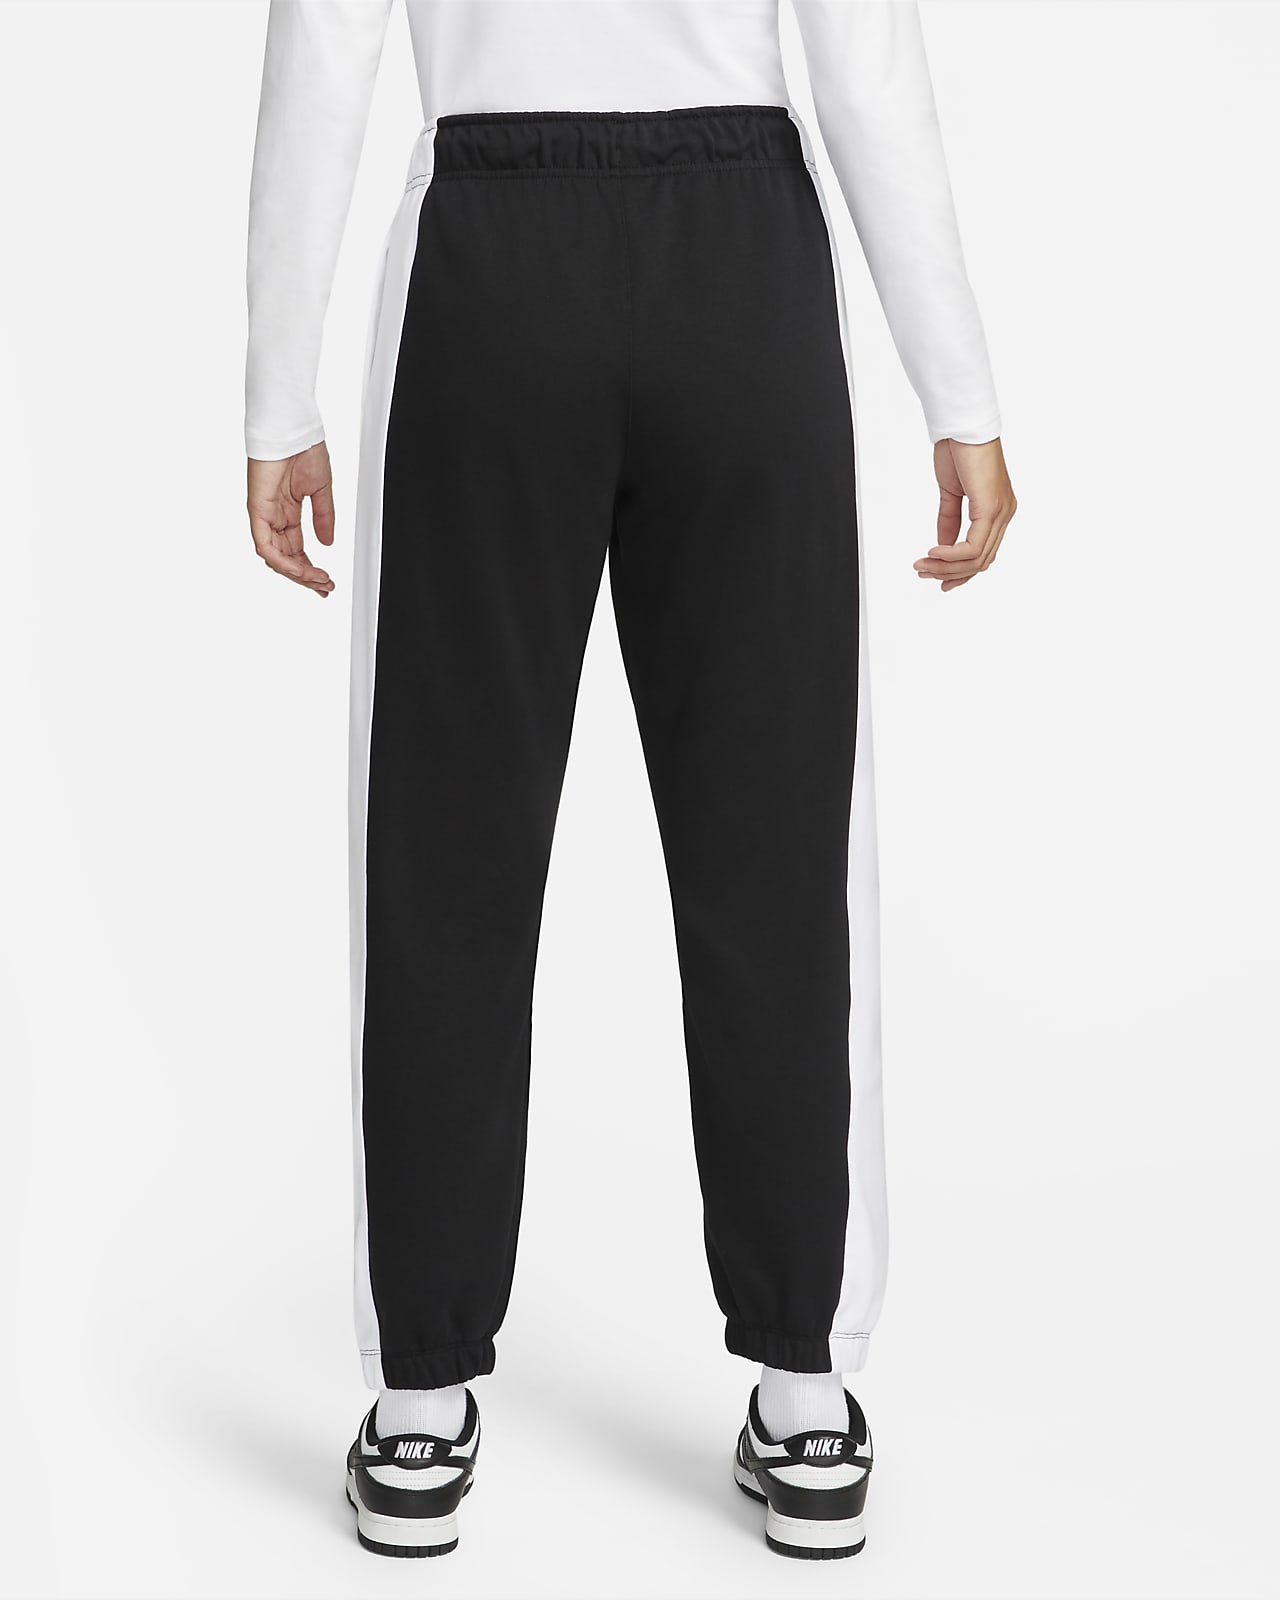 Nike Sportswear Team Nike Women's Fleece Pants.